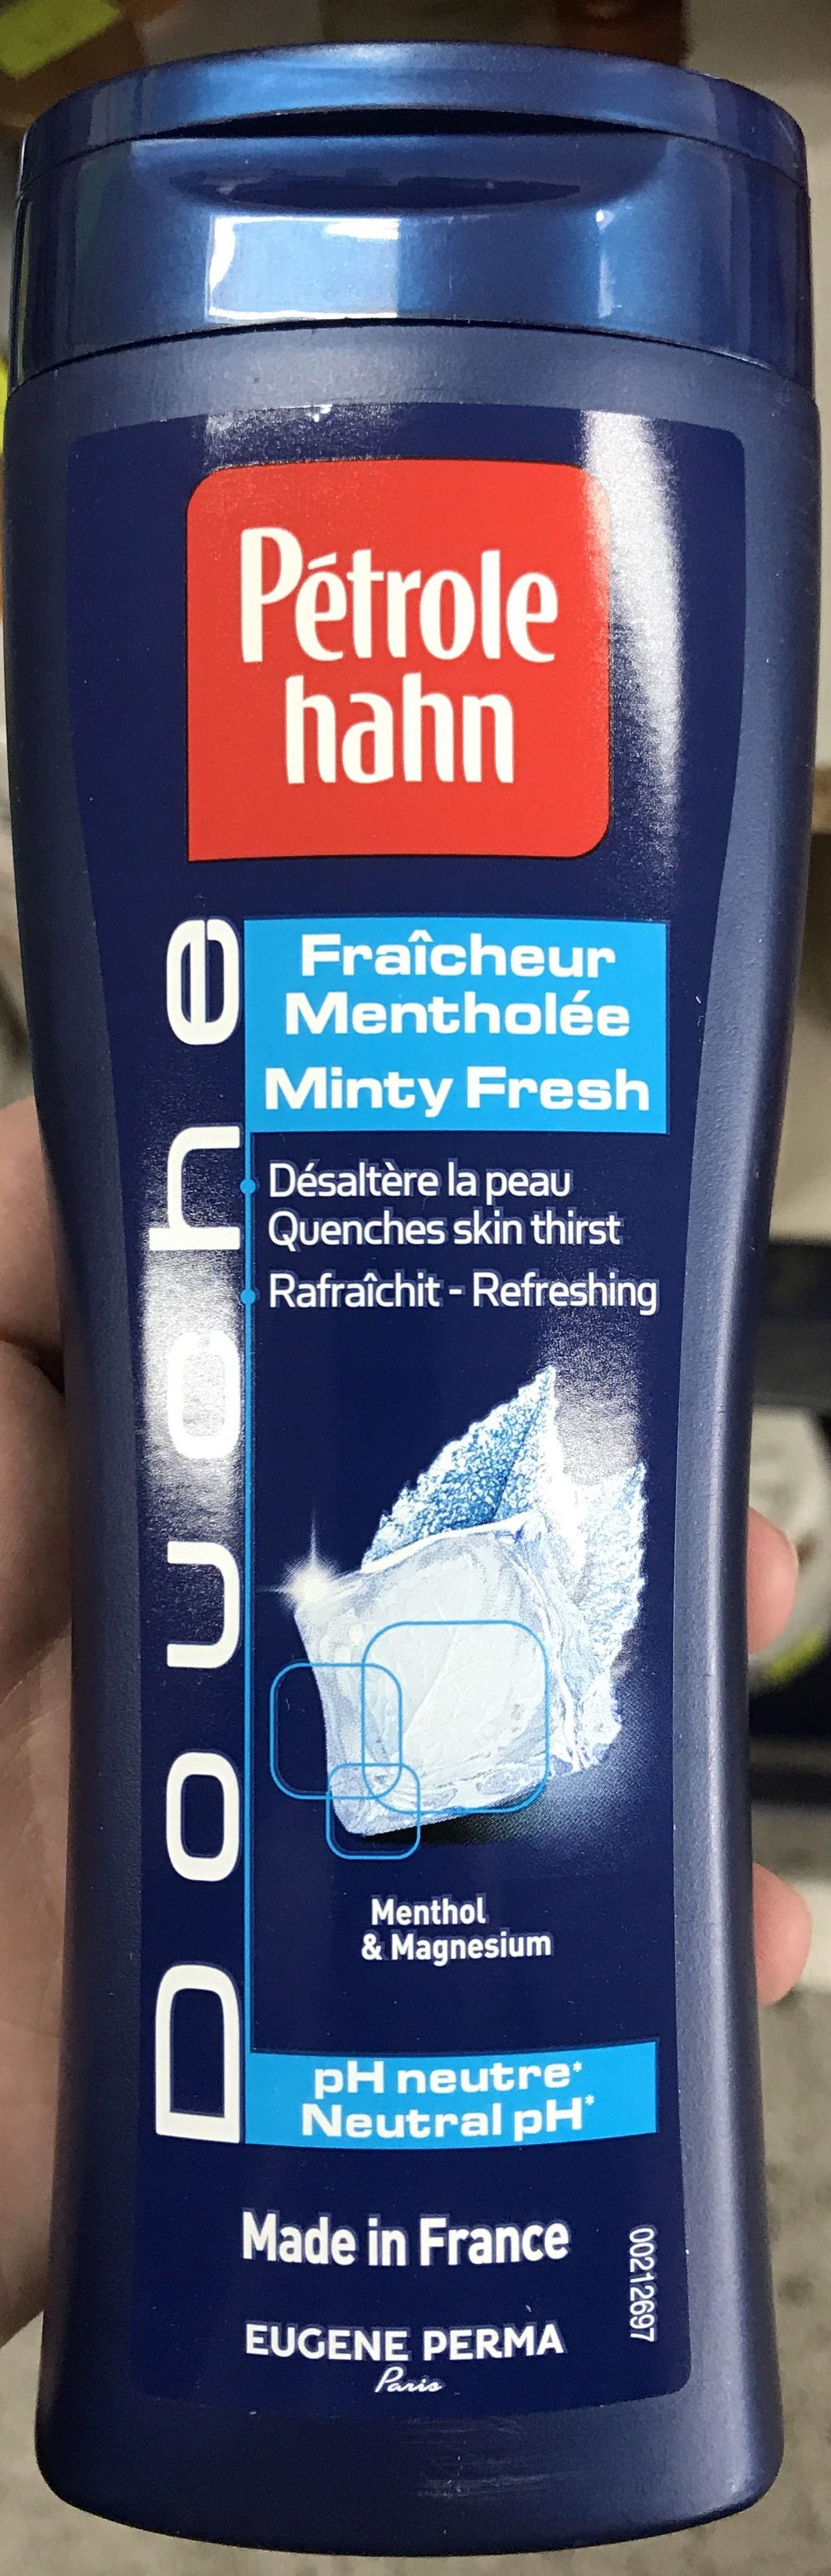 Douche Fraîcheur Mentholée - Product - fr